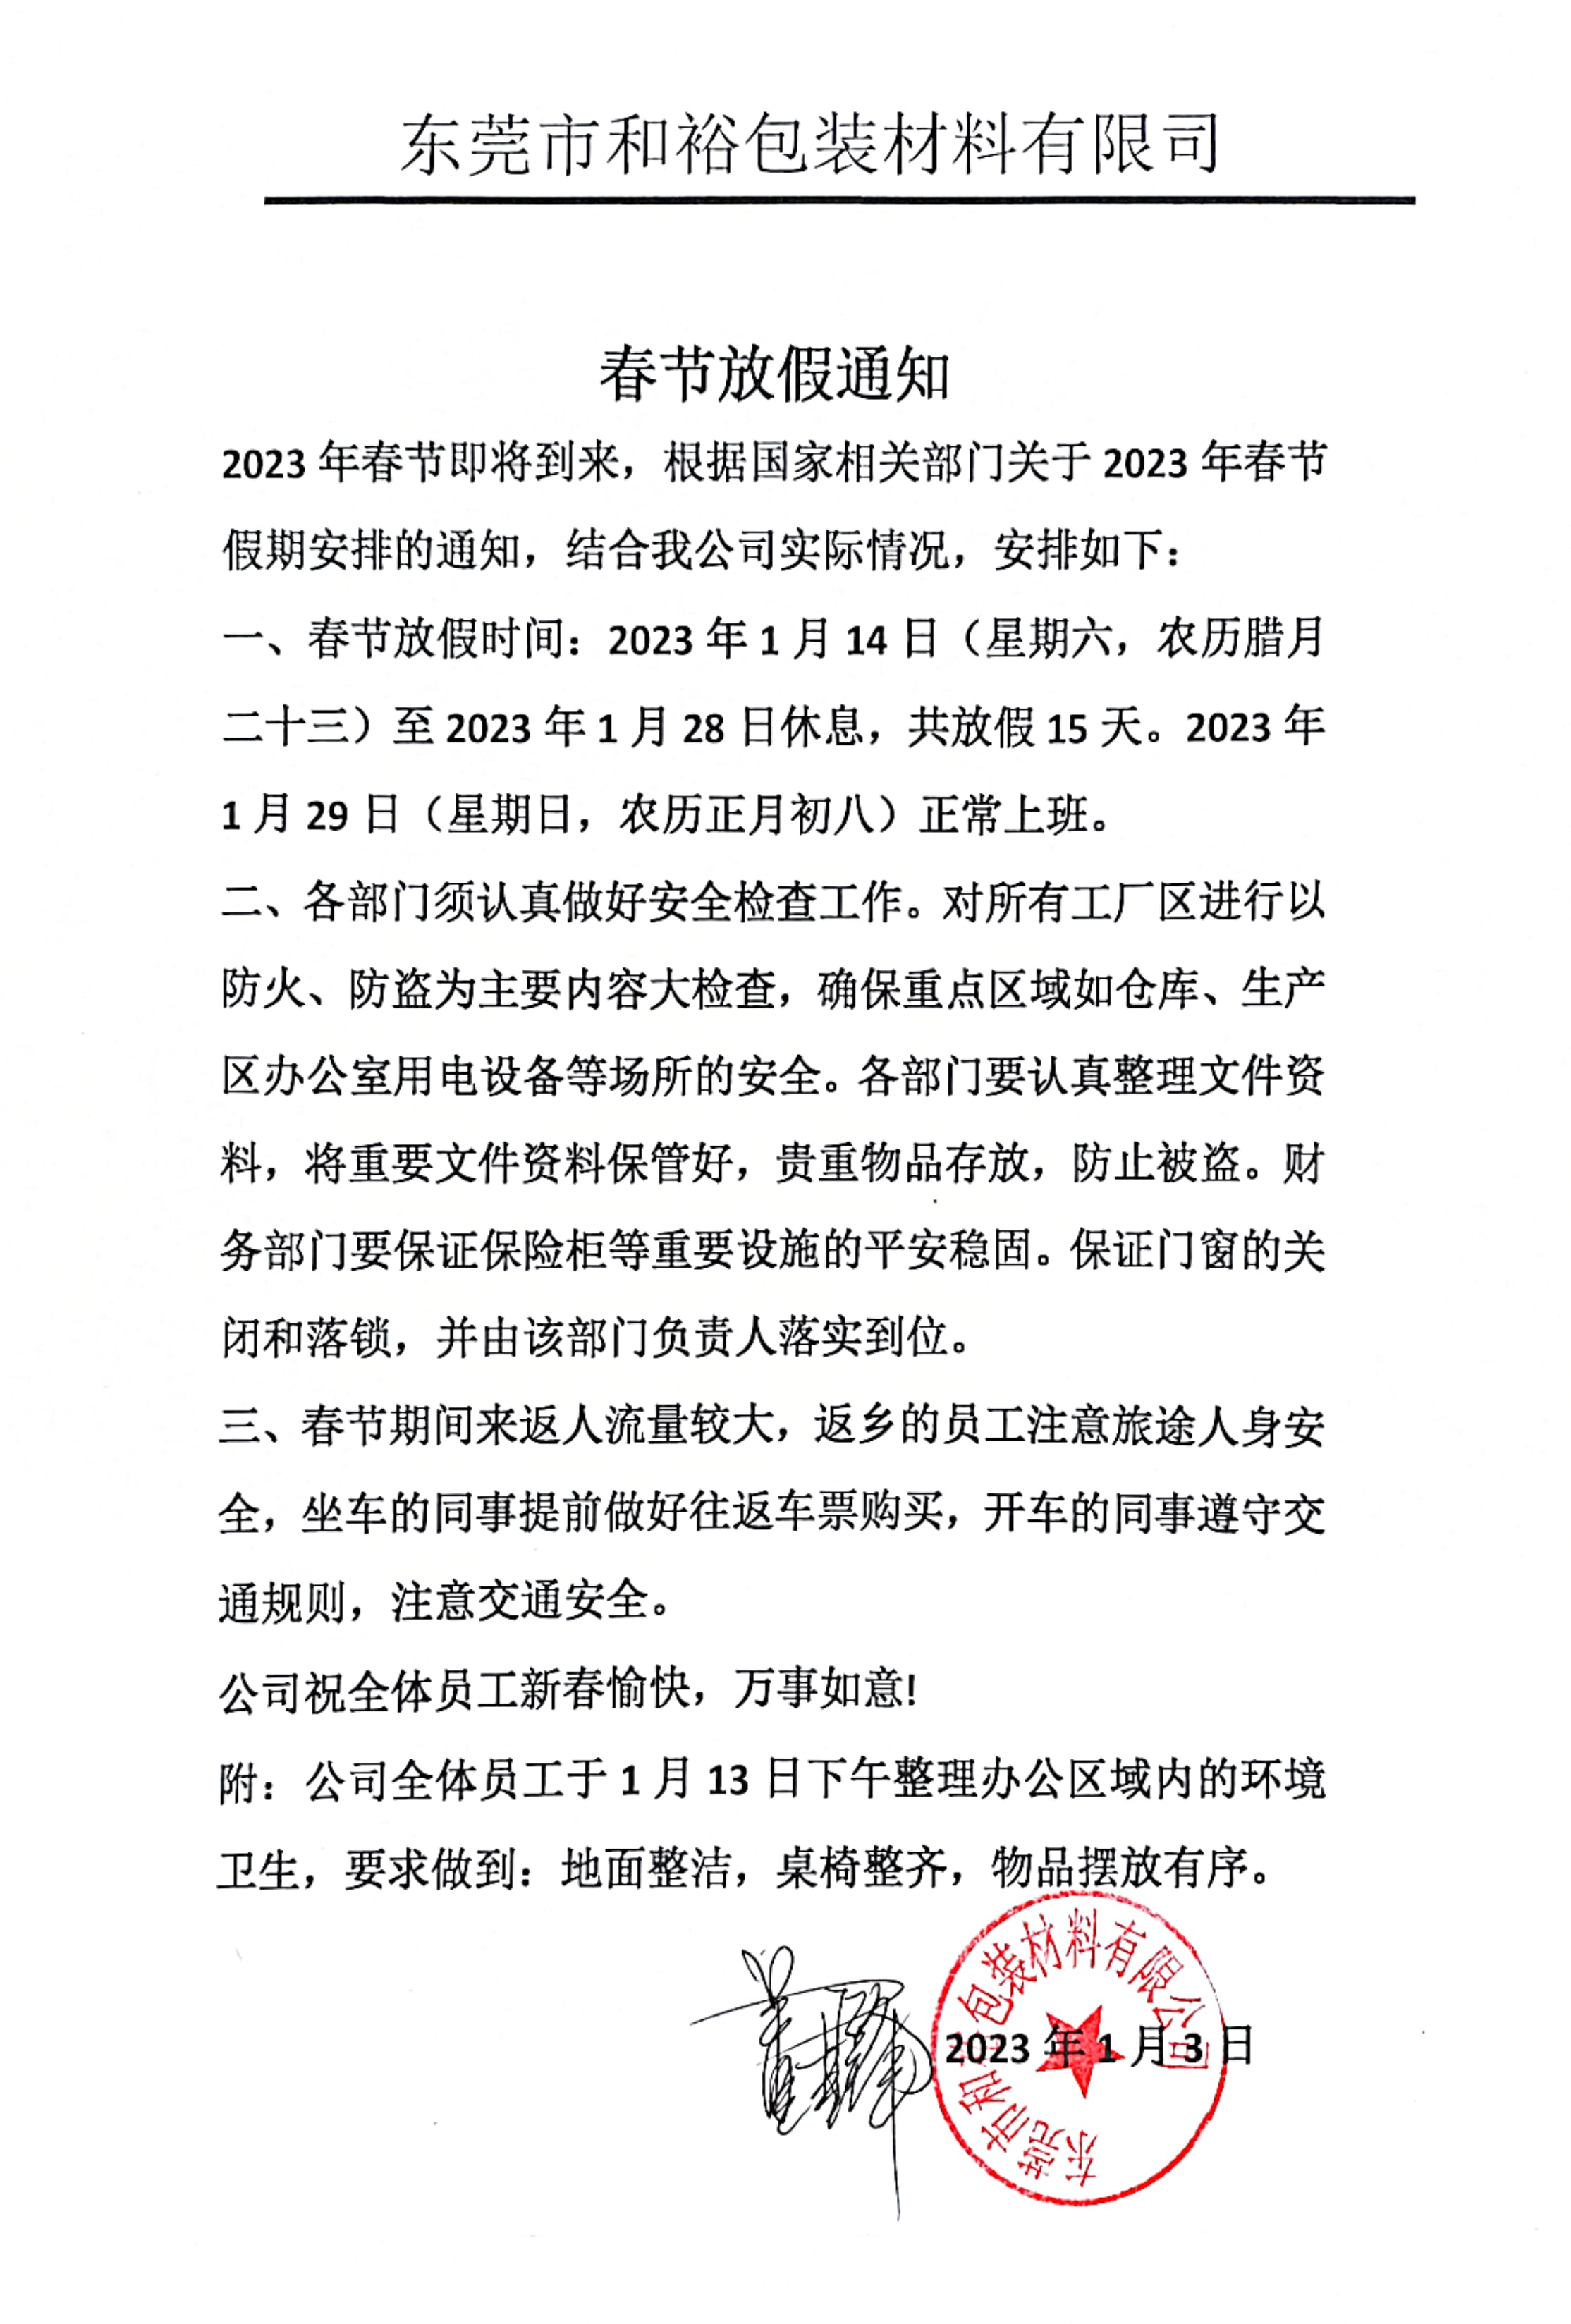 黄南州2023年和裕包装春节放假通知